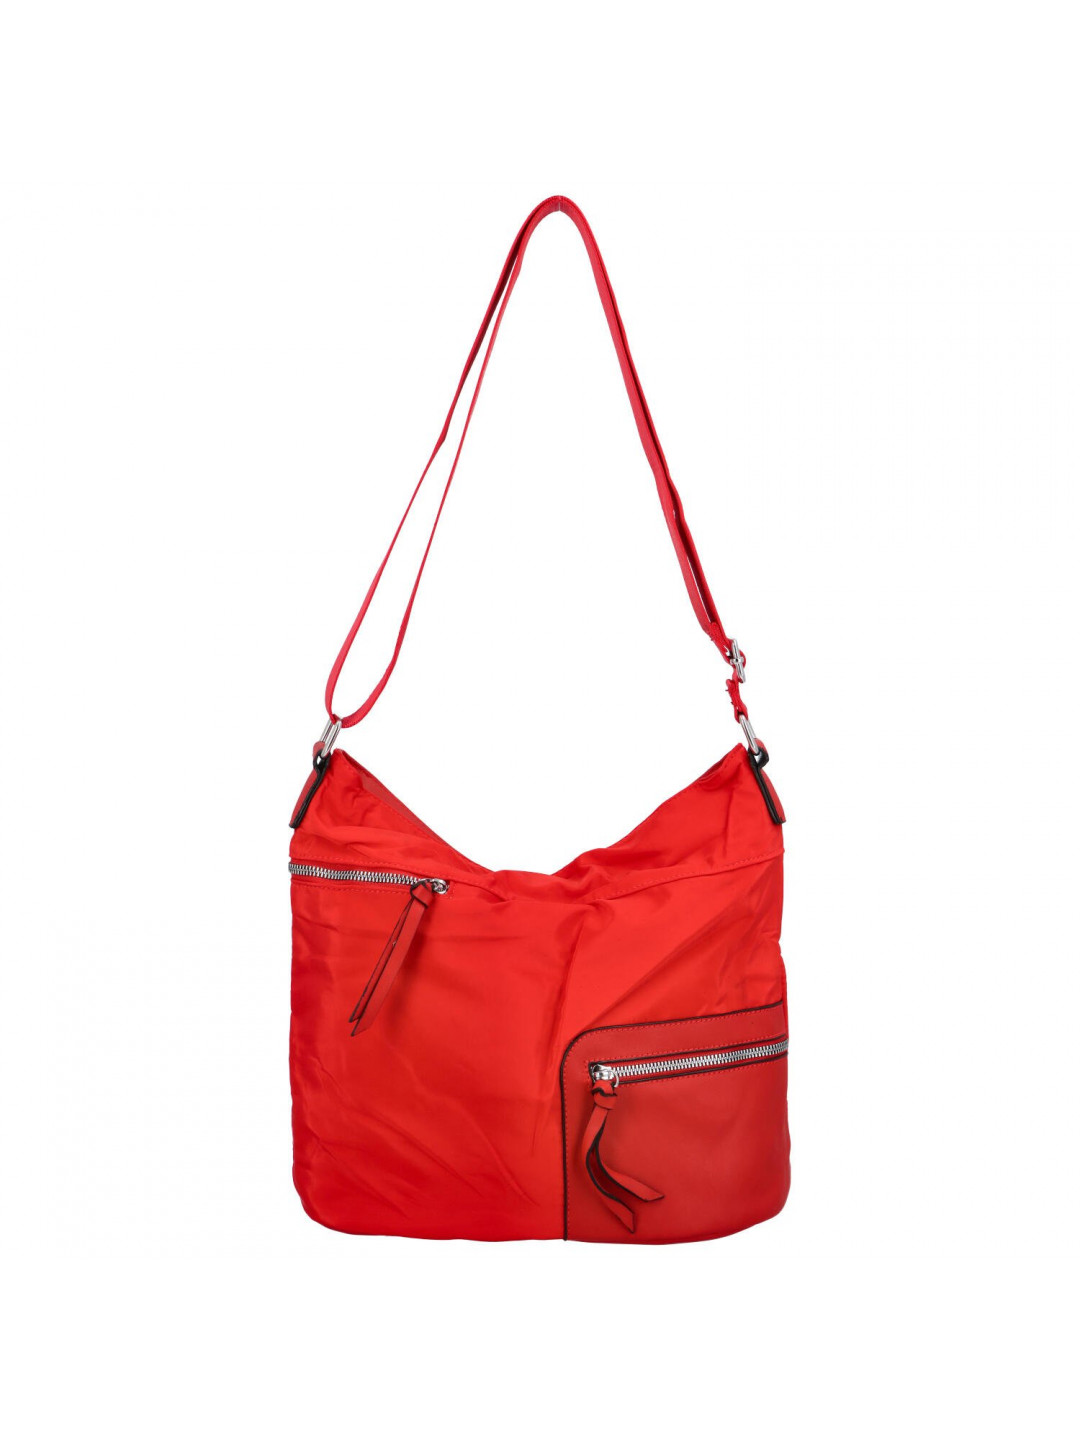 Pohodová dámská koženková kabelka Leire červená